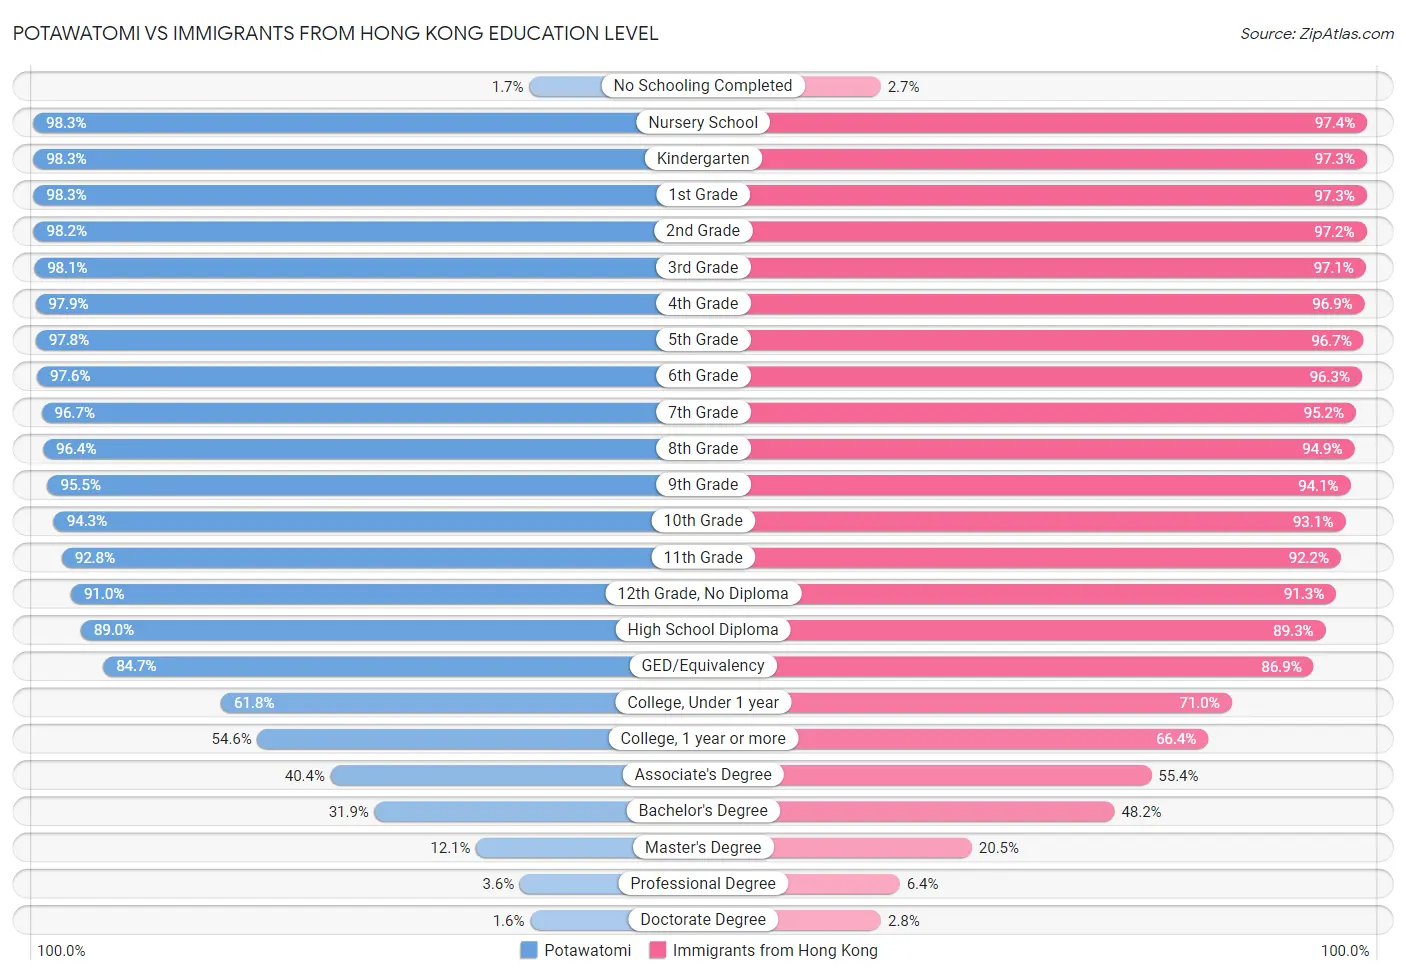 Potawatomi vs Immigrants from Hong Kong Education Level